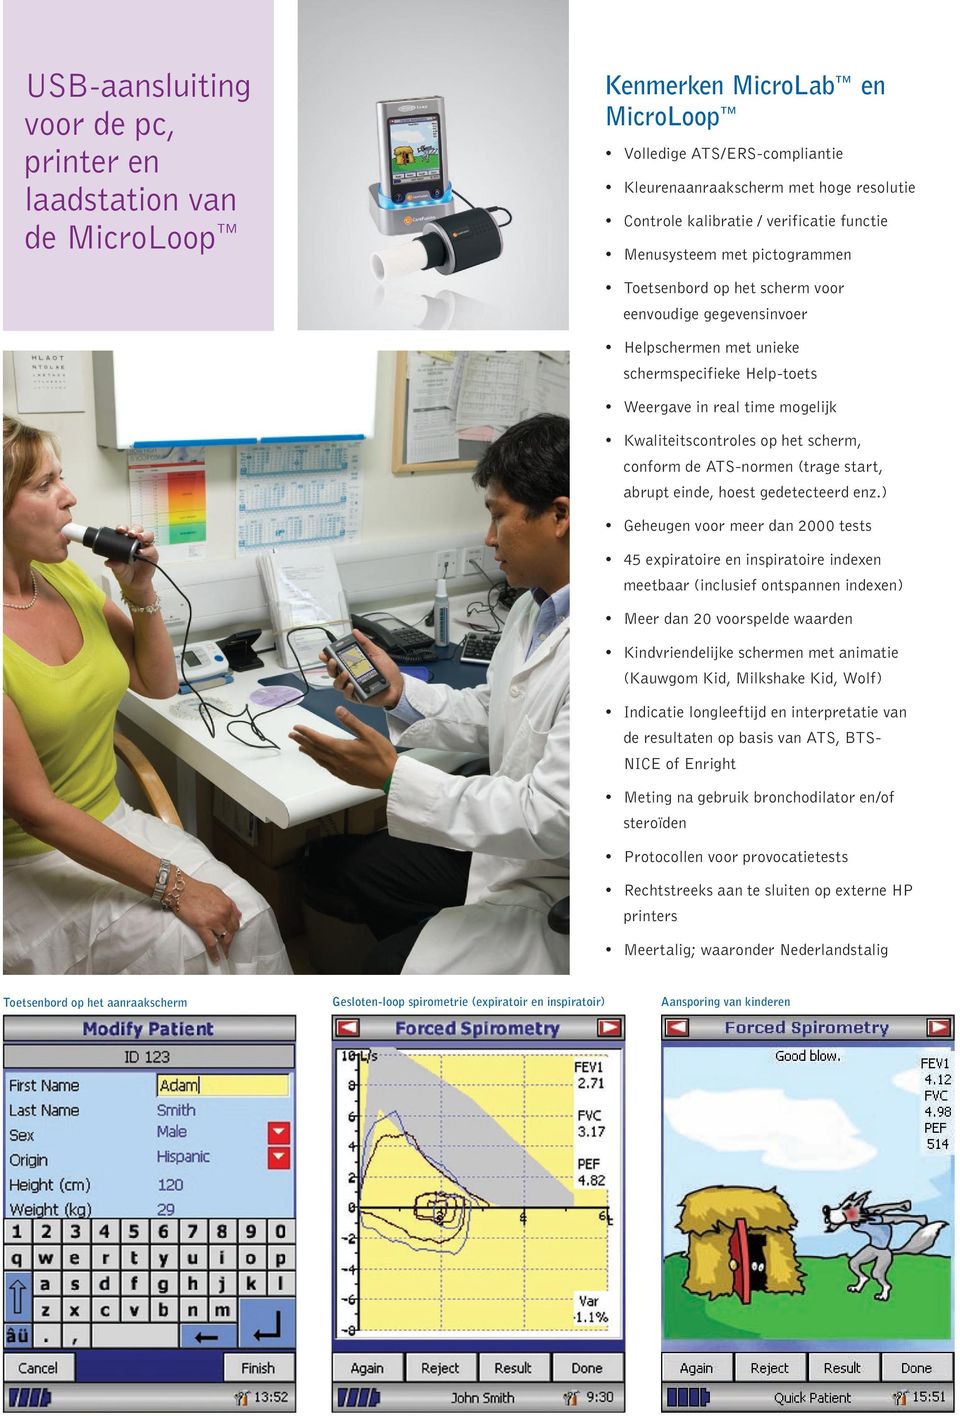 Via het hoge resolutie kleurenaanraakscherm kan de gebruiker met een styluspen het Kenmerken MicroLab en MicroLoop Kenmerken Spirometrie PC Software Volledige ATS/ERS-compliantie Eenvoudige selectie